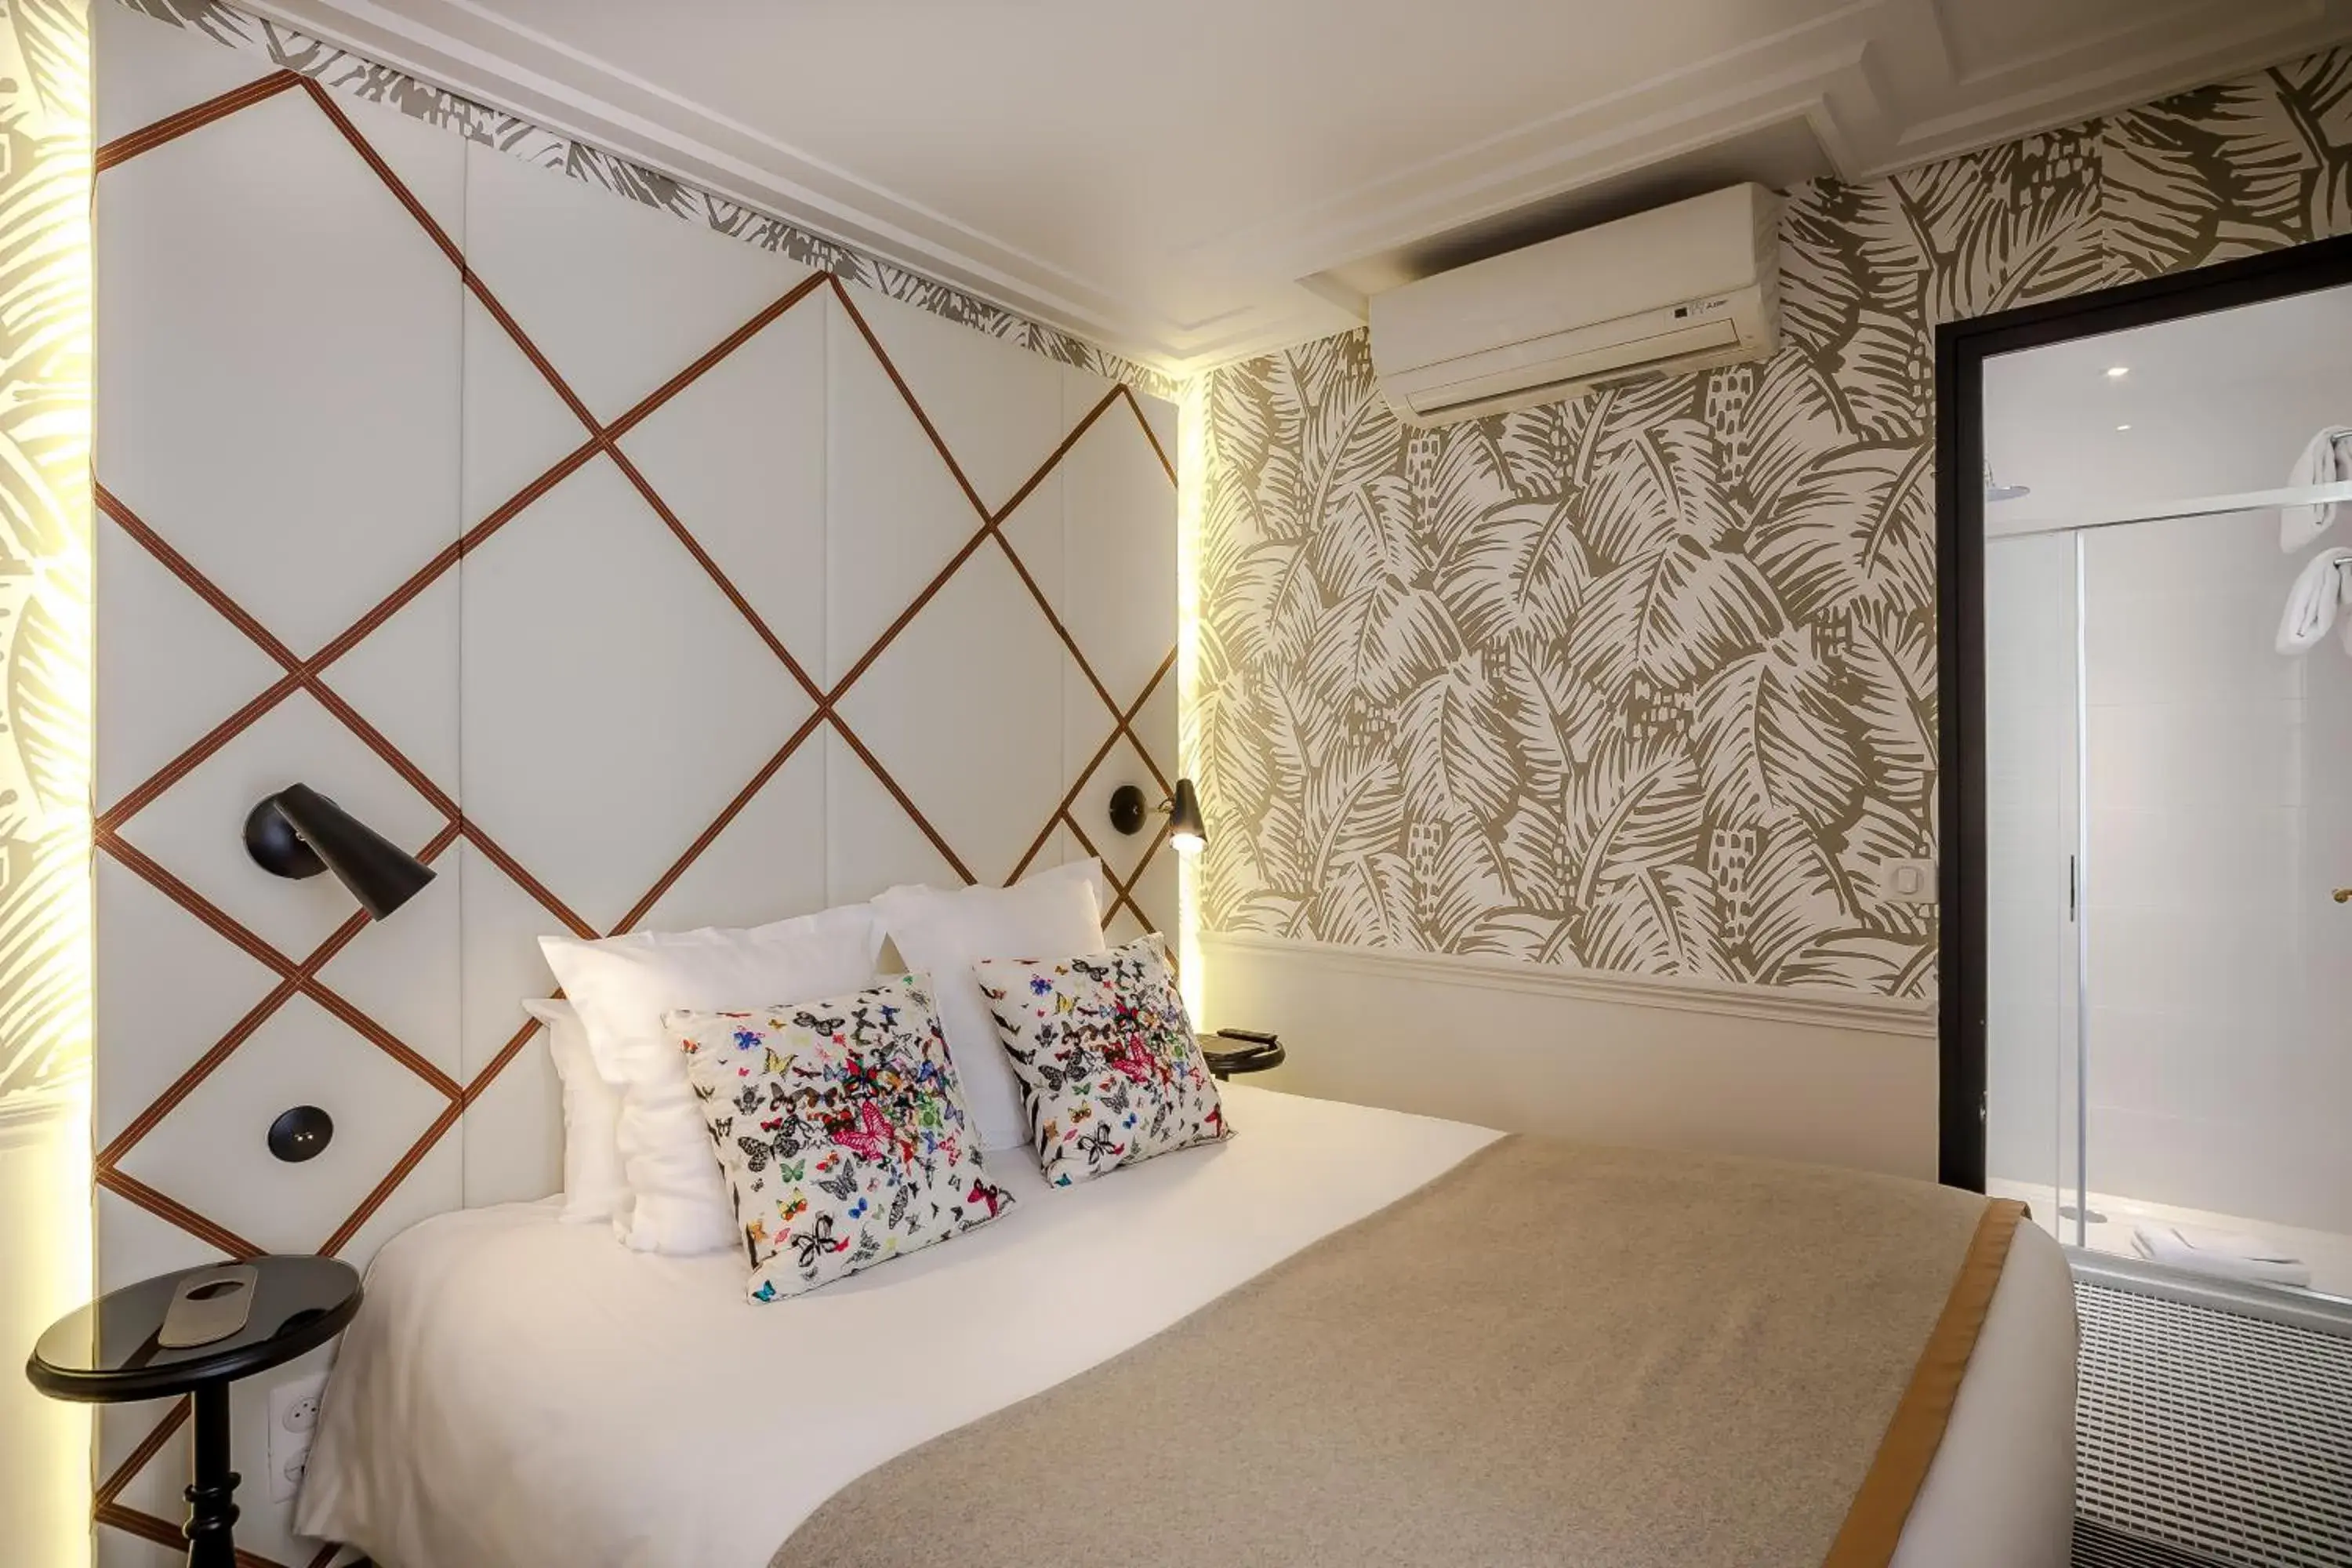 Bed, Room Photo in Hôtel Jardin Le Bréa